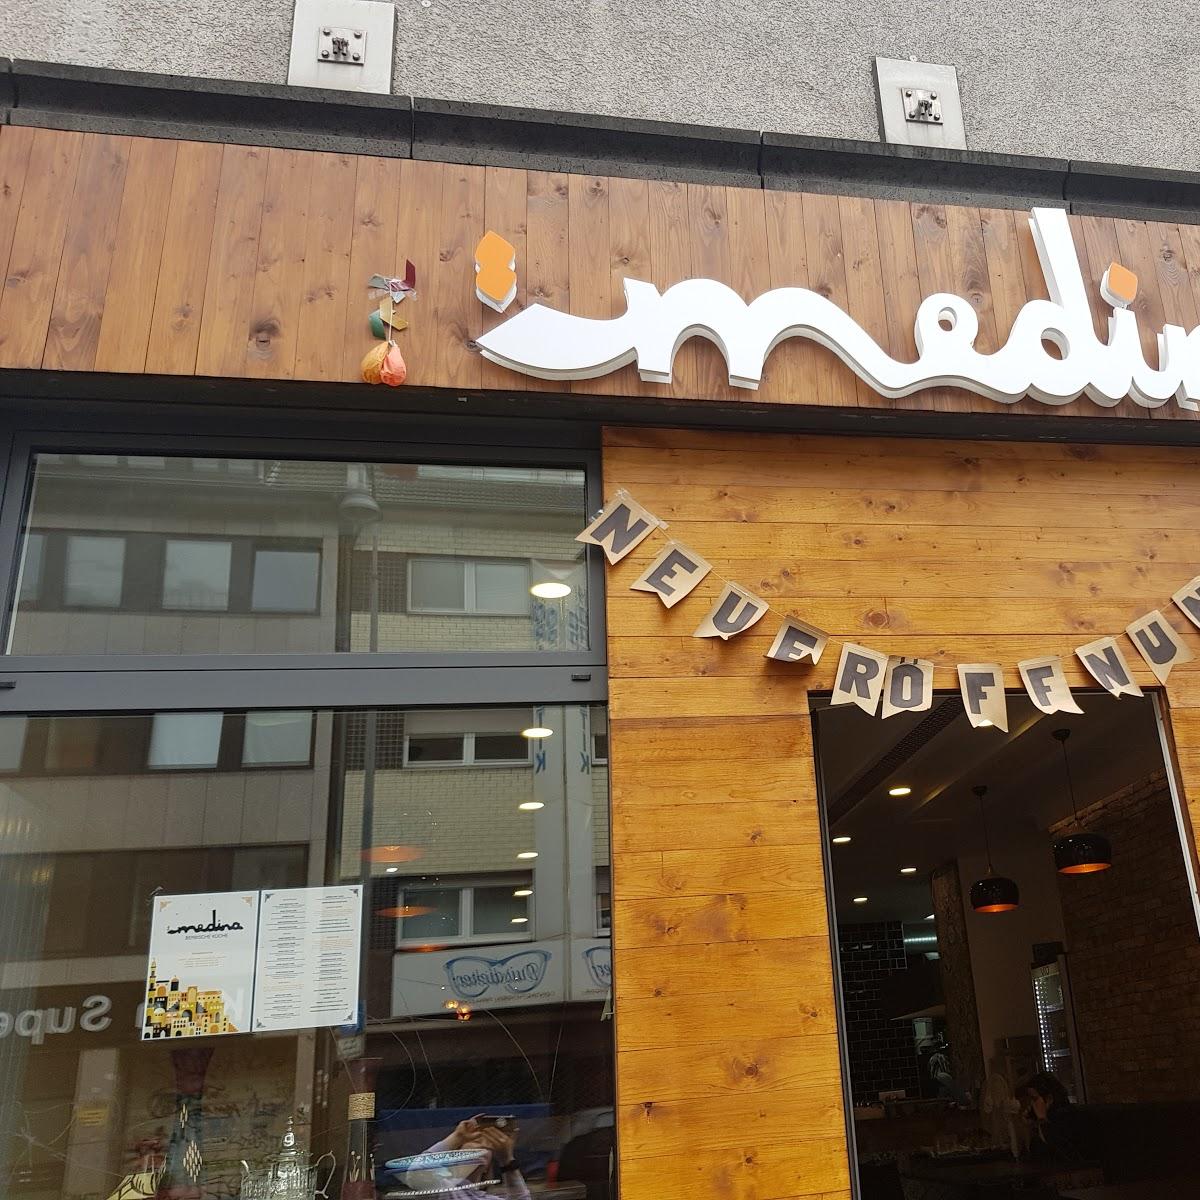 Restaurant "Medina" in Köln